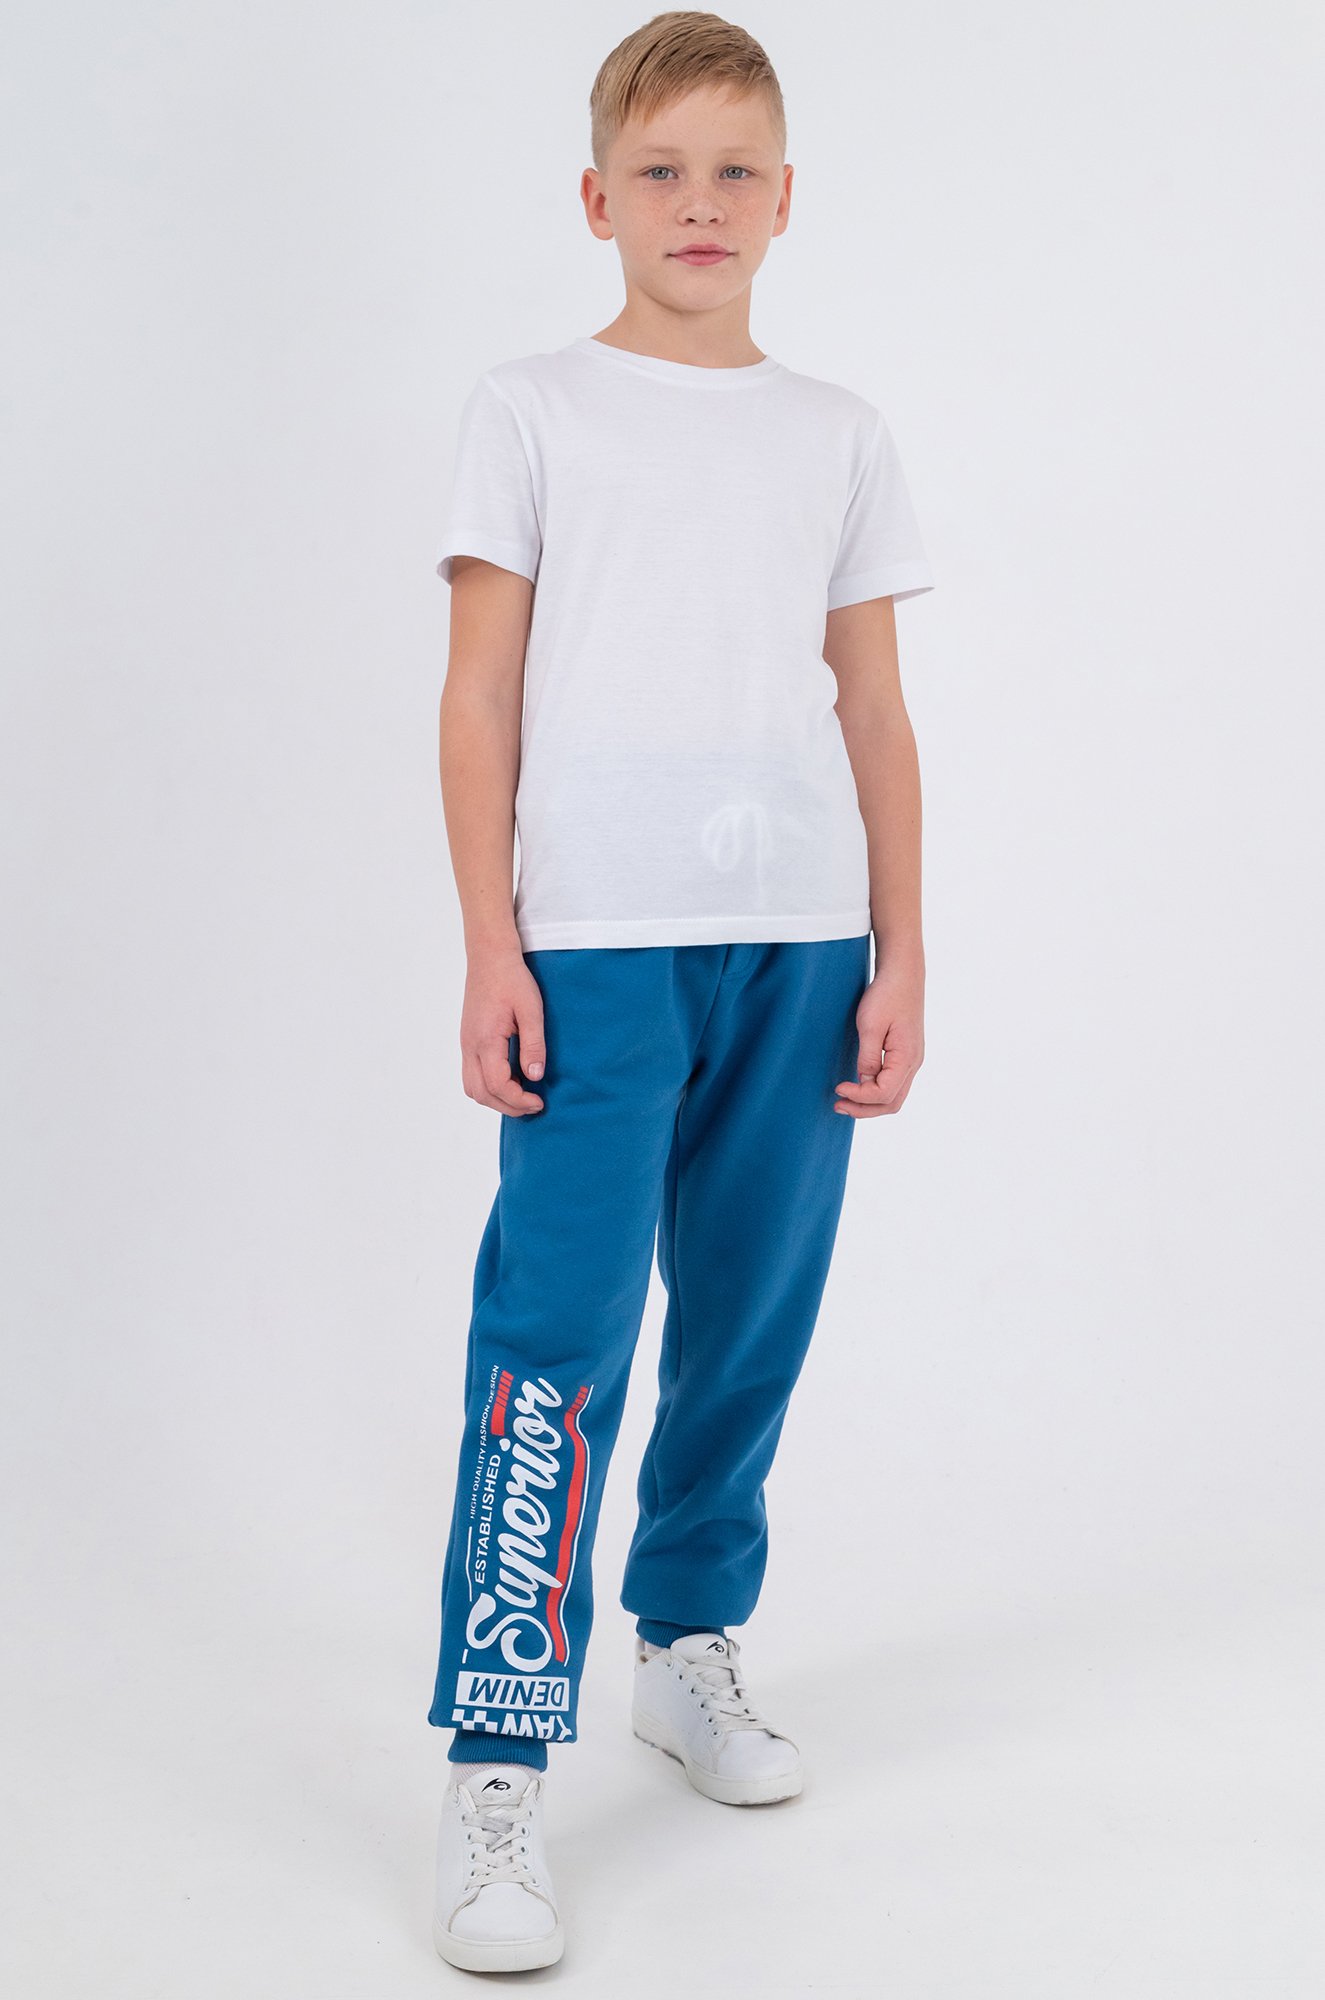 Утепленные брюки для мальчика из футера трехнитки с начесом Bonito